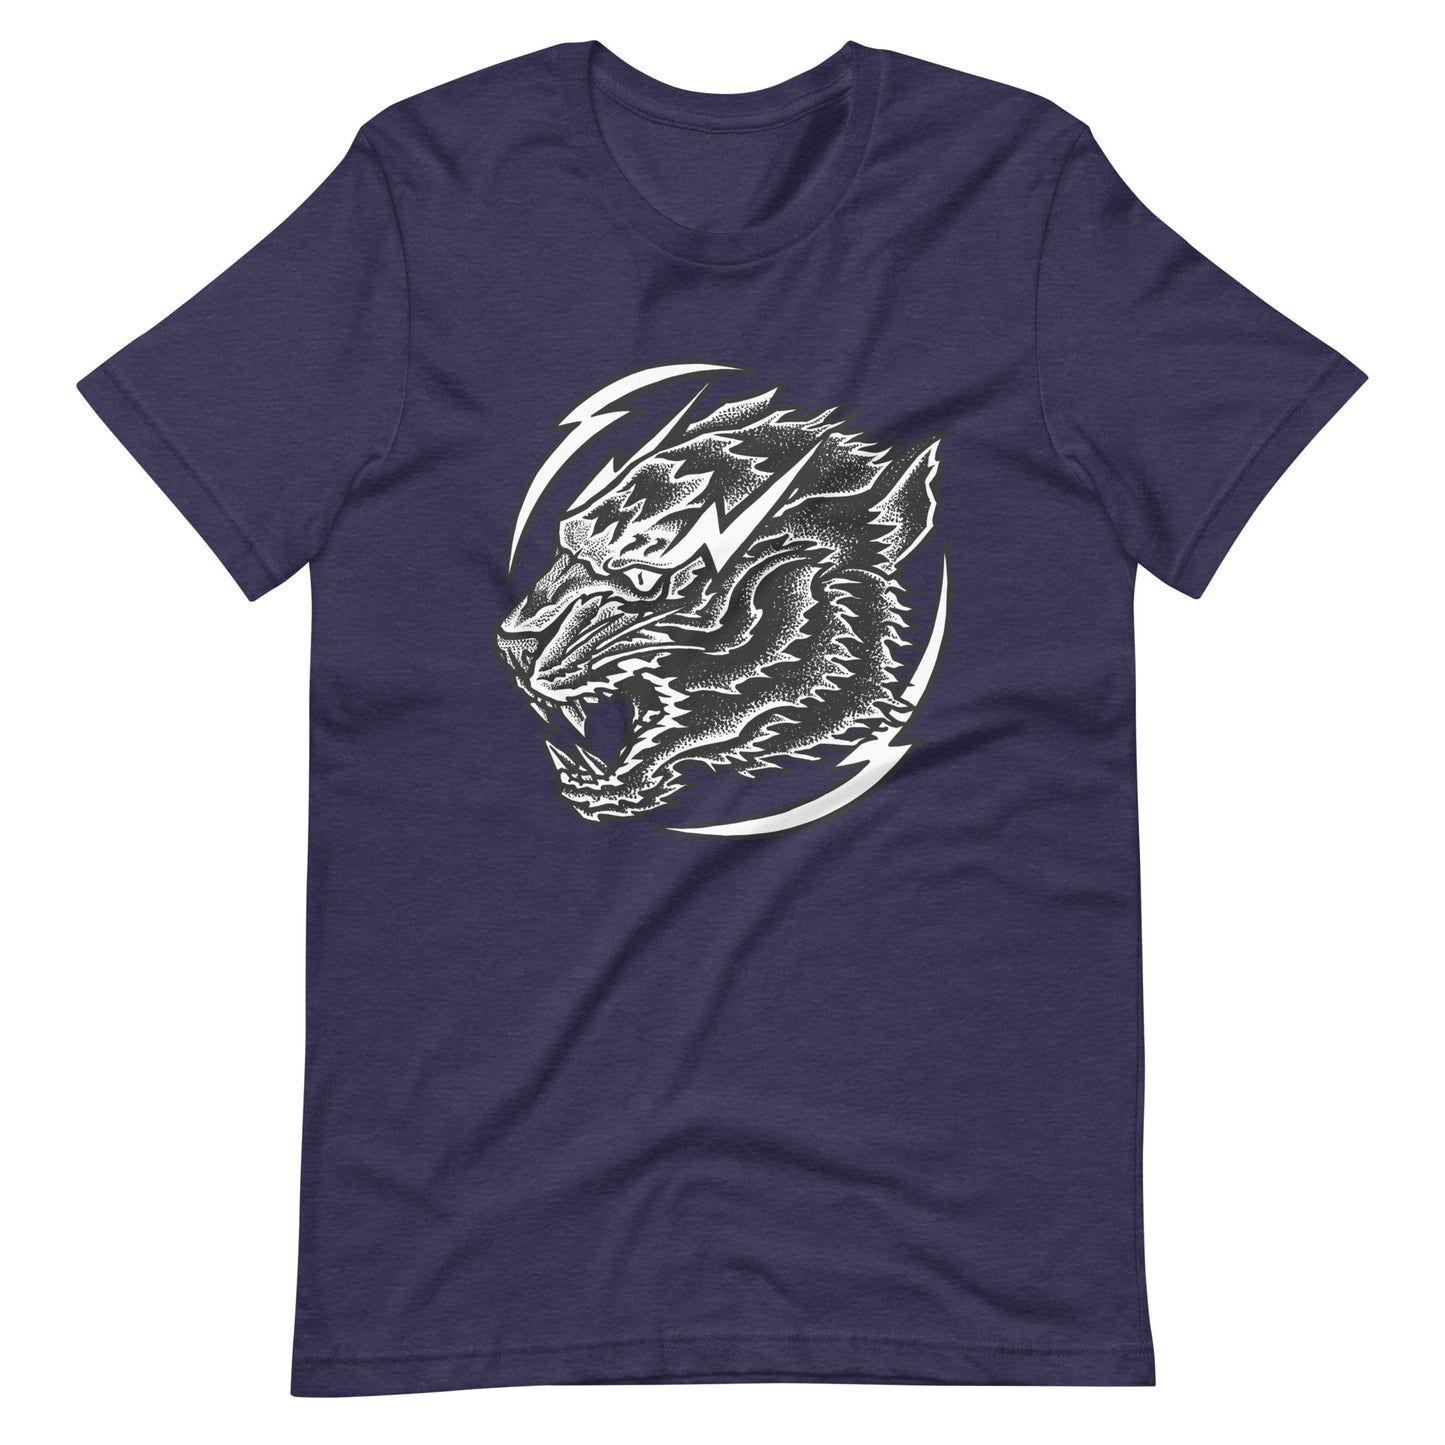 Thunder Tiger - Men's t-shirt - Heather Midnight Navy Front